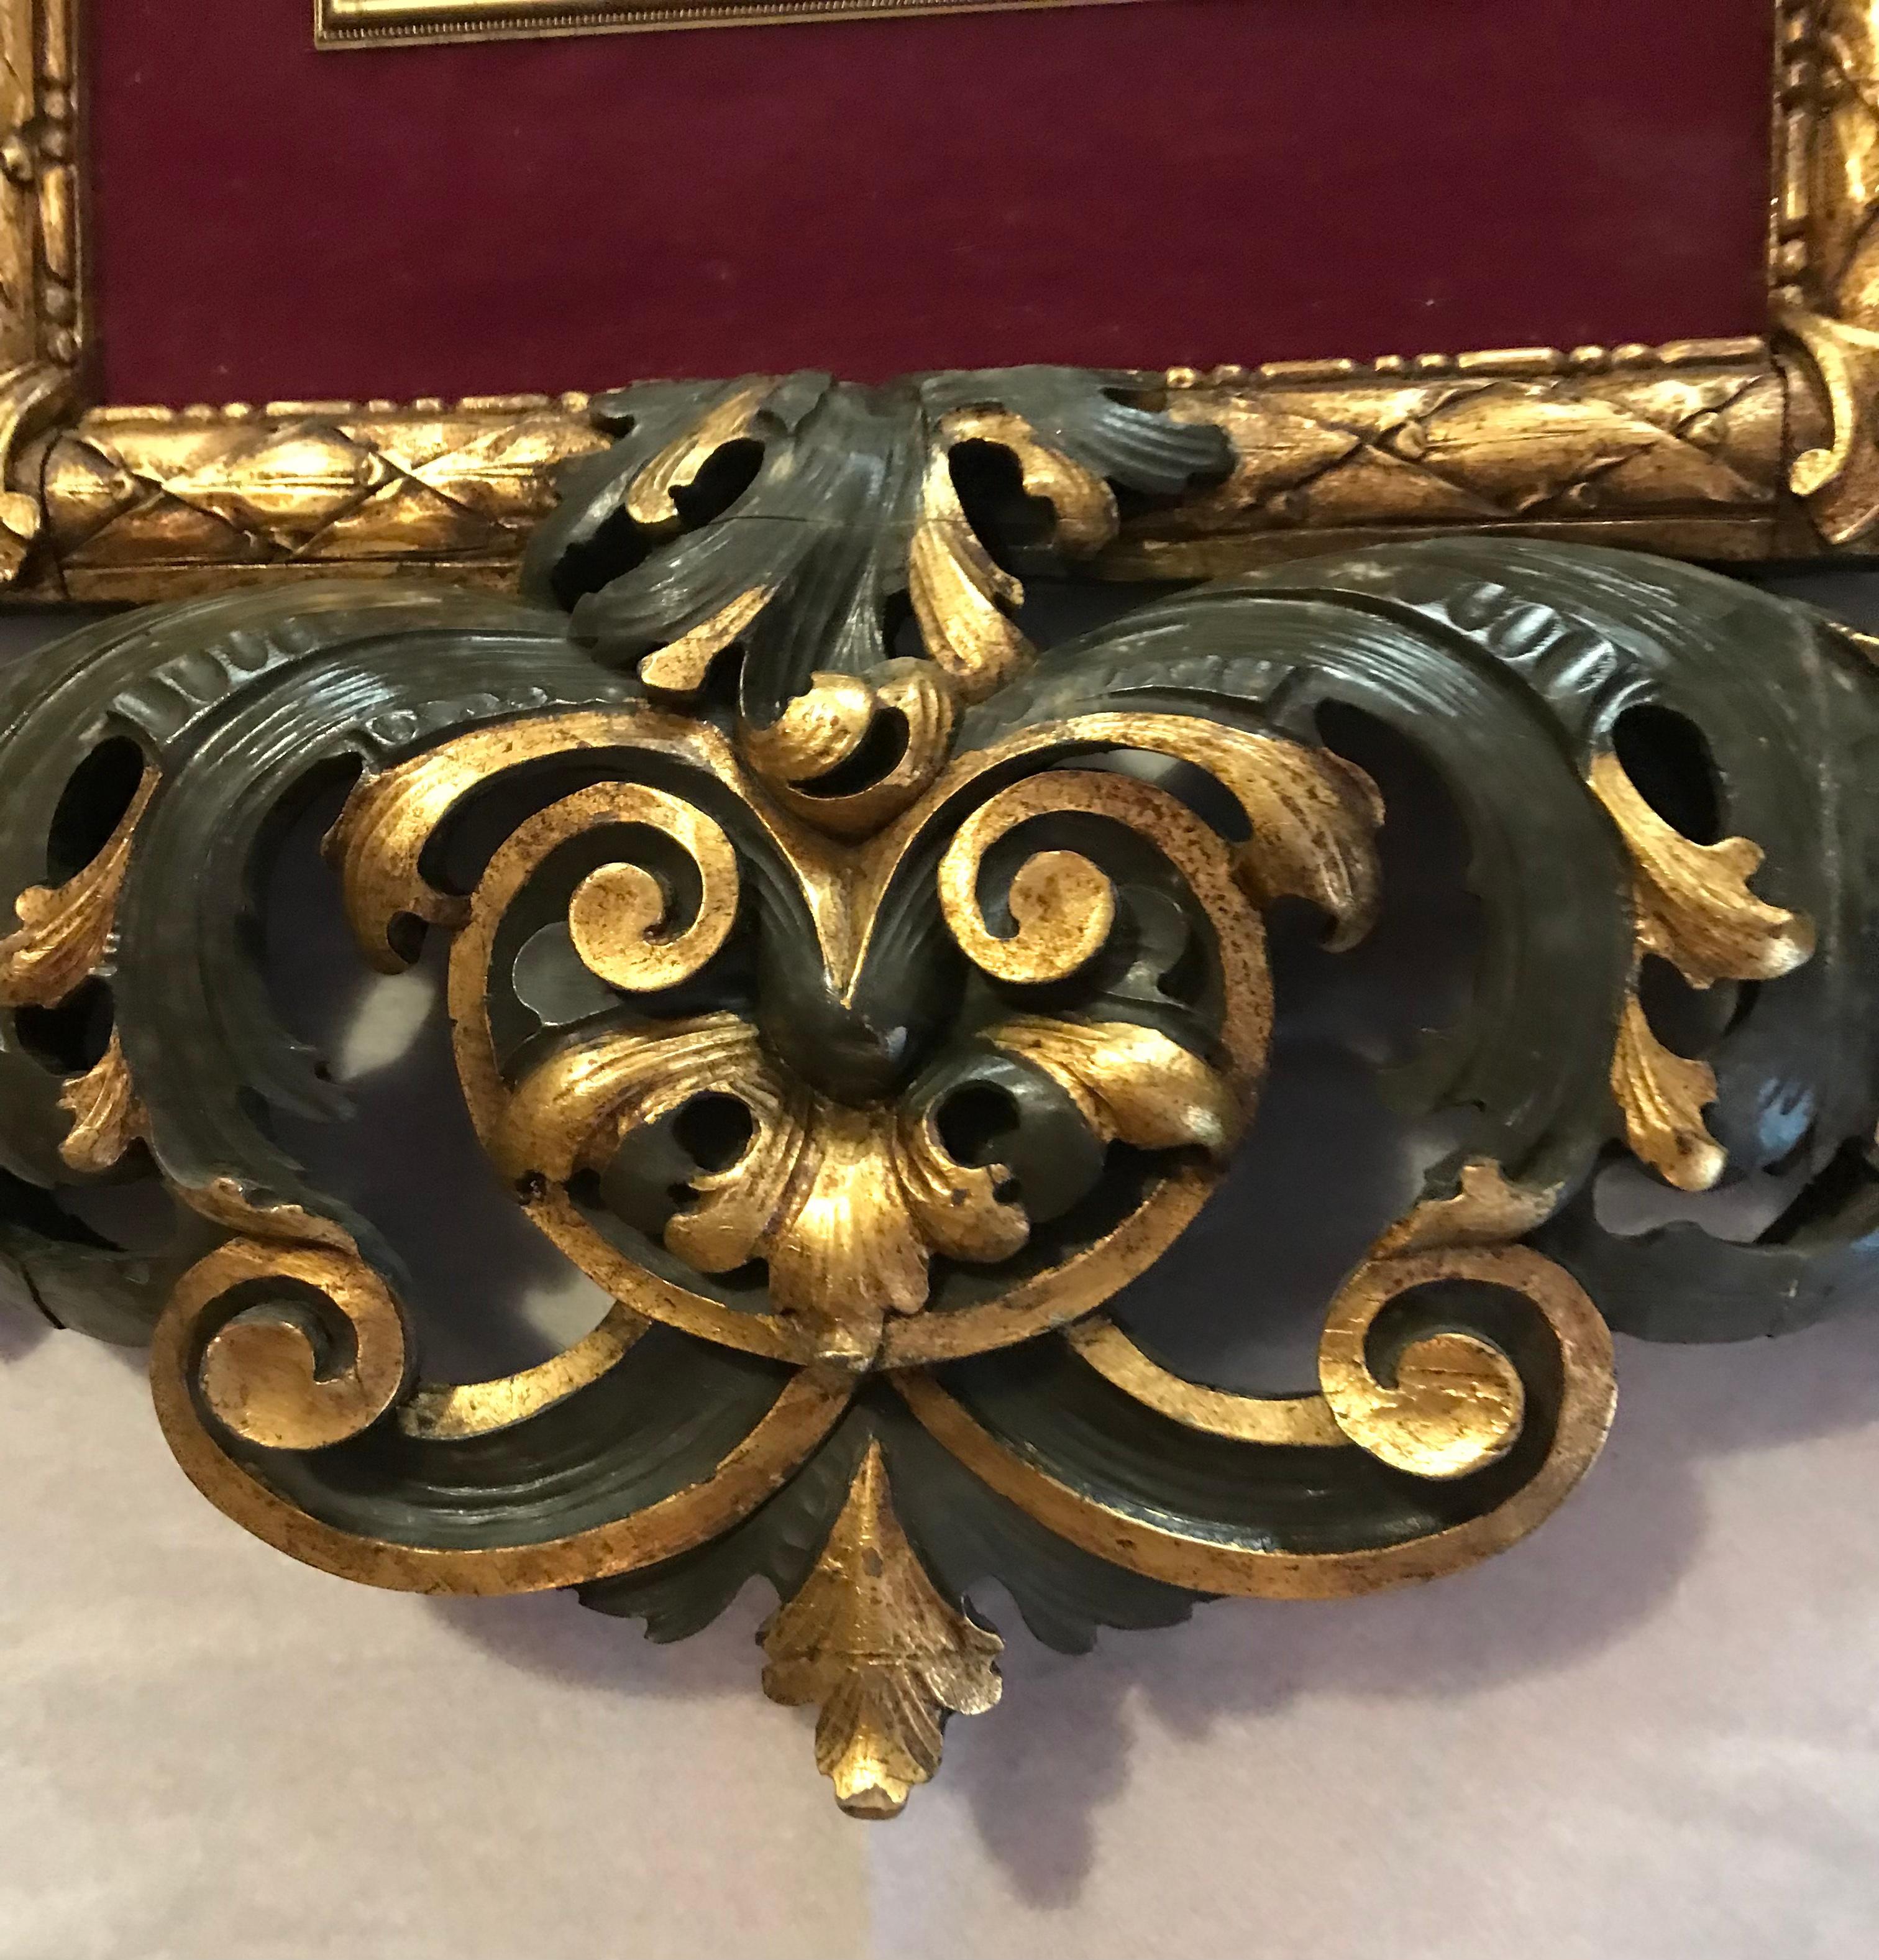 Cadre photo baroque italien en bois massif doré et vert foncé, 
Le cadre de Vittoria est sculpté à la main par un maître artisan italien en Toscane.
Feuillage très élaboré, vert et or, typique du XIXe siècle.
en Italie. En très bon état, vous pouvez